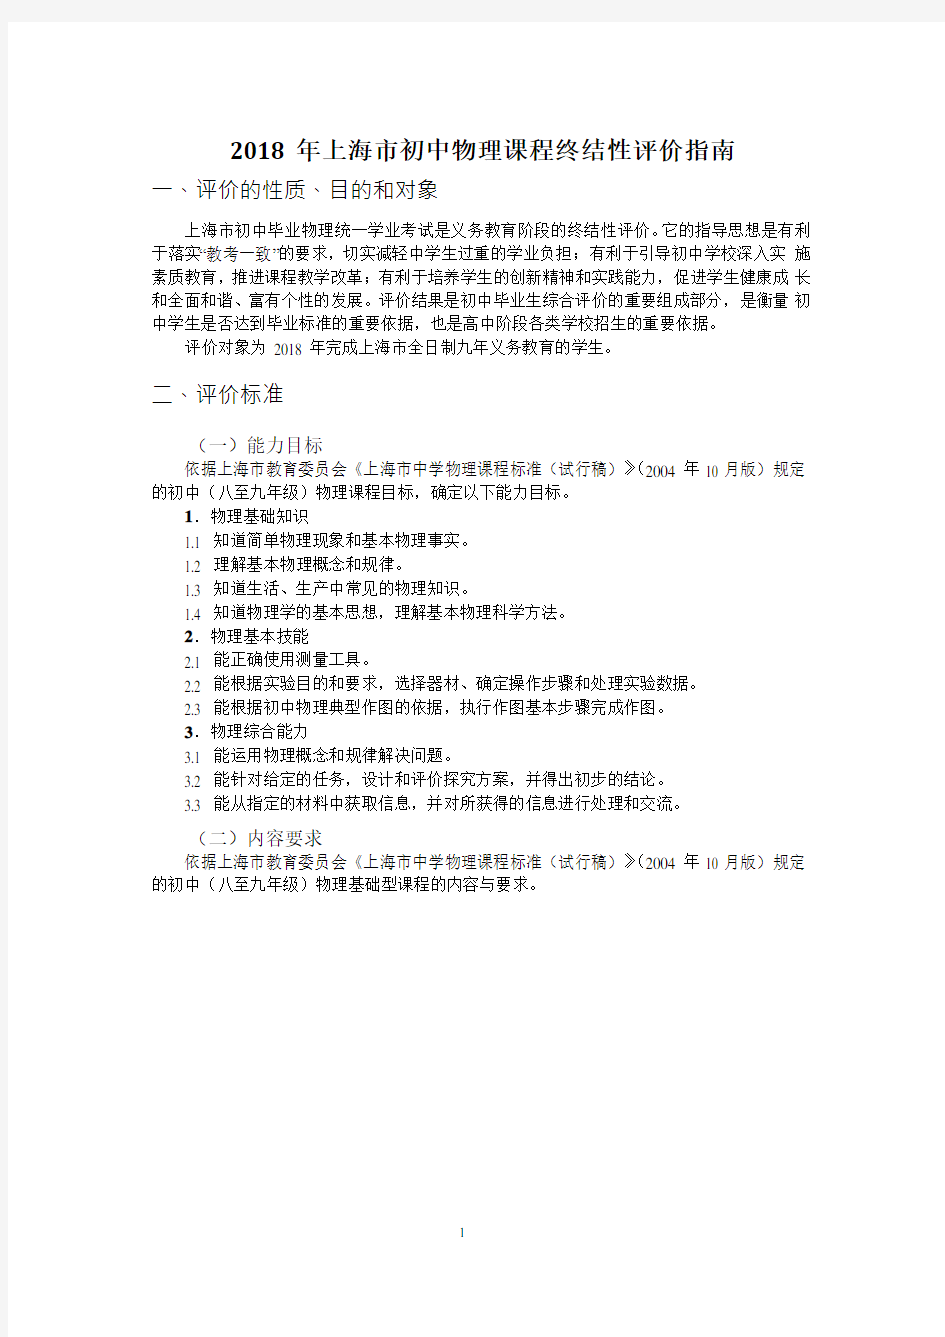 2018年上海市初中物理课程终结性评价指南